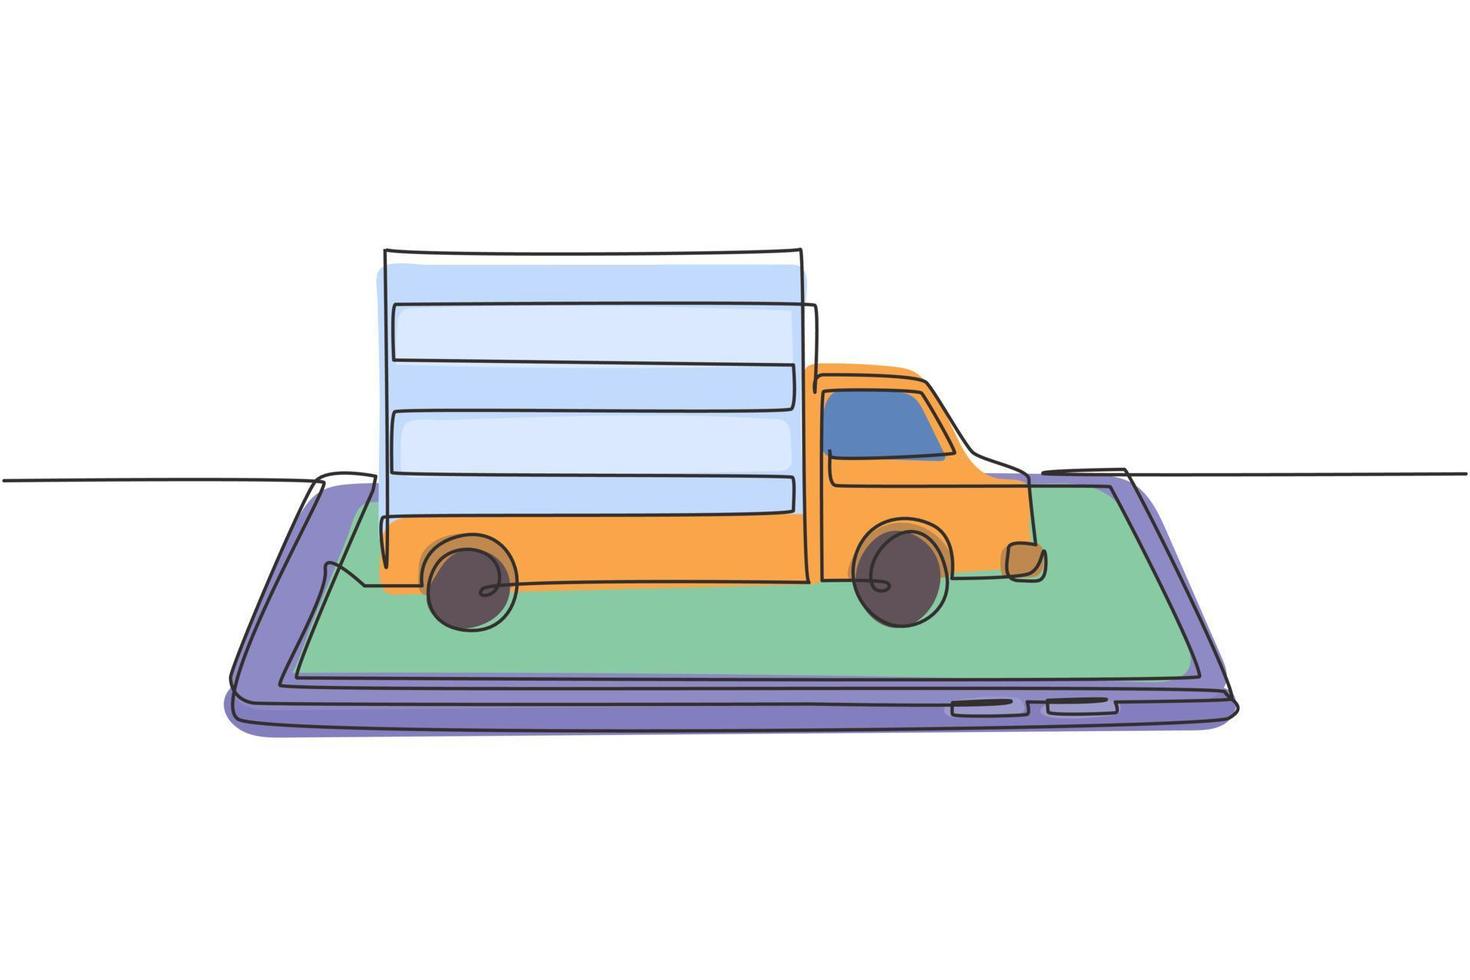 El carro de entrega de dibujo continuo de una línea entrega paquetes y viaja en la pantalla del teléfono inteligente. servicio de entrega online. concepto de paquete de entrega rápida. Ilustración gráfica de vector de diseño de dibujo de una sola línea